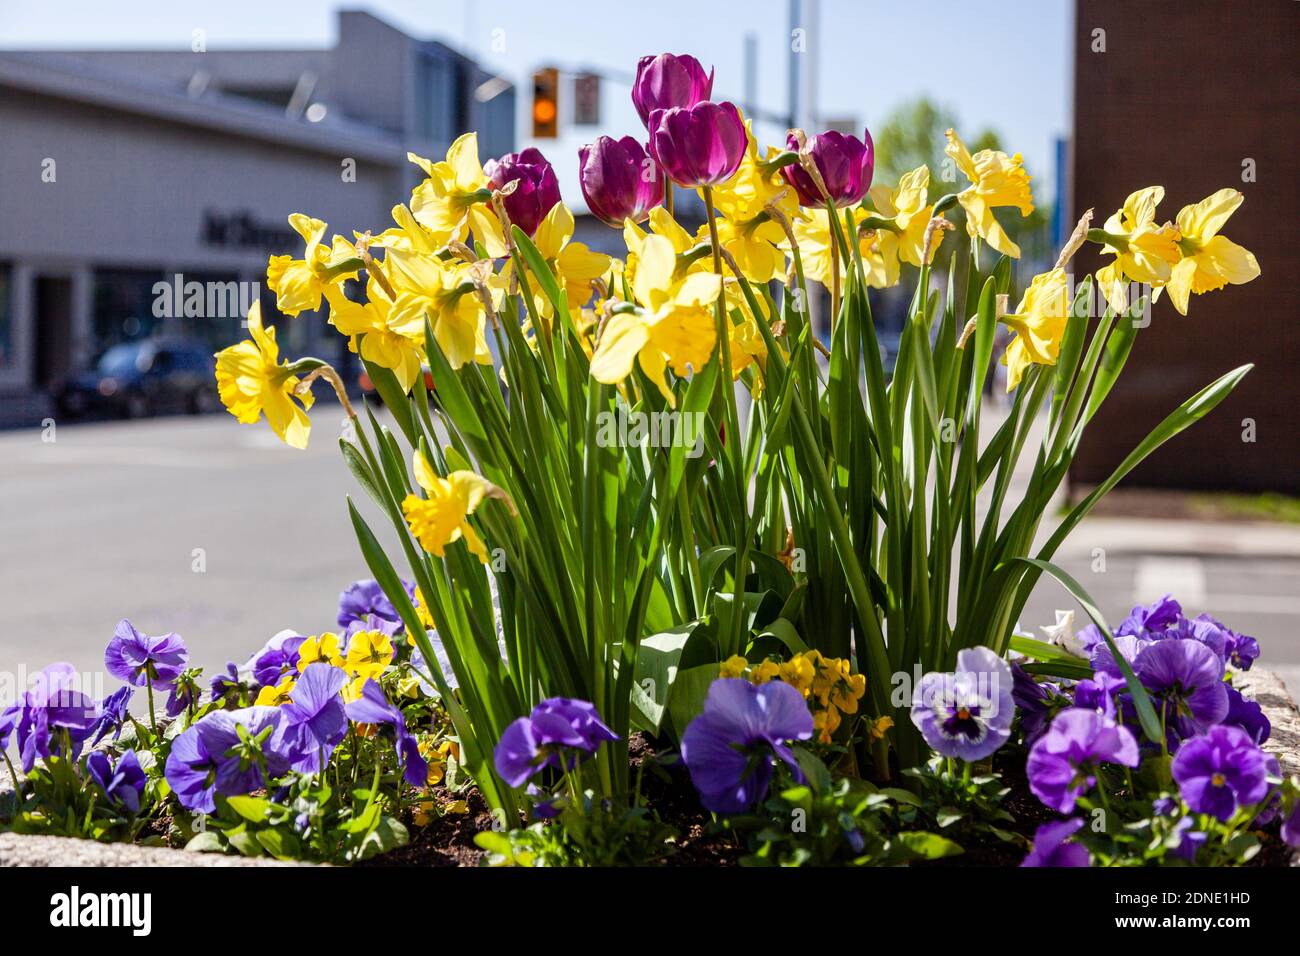 Escena de la calle con flores de primavera en una sembradora con una tienda en el fondo. Foto de stock